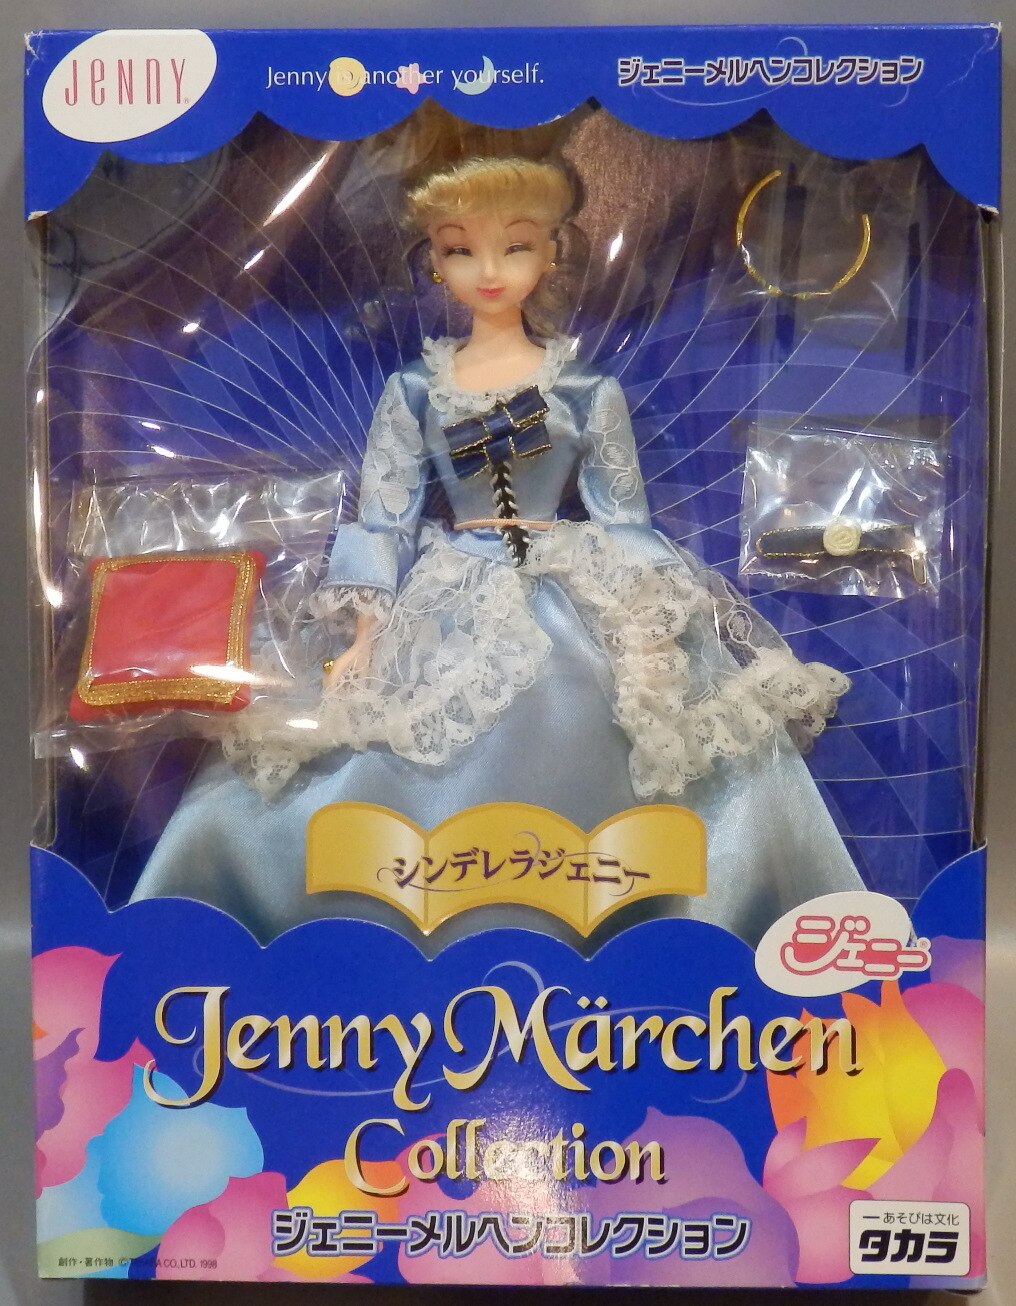 予約早割メルヘンコレクション 眠りの森のジェニー 眠り目 ジェニー 人形